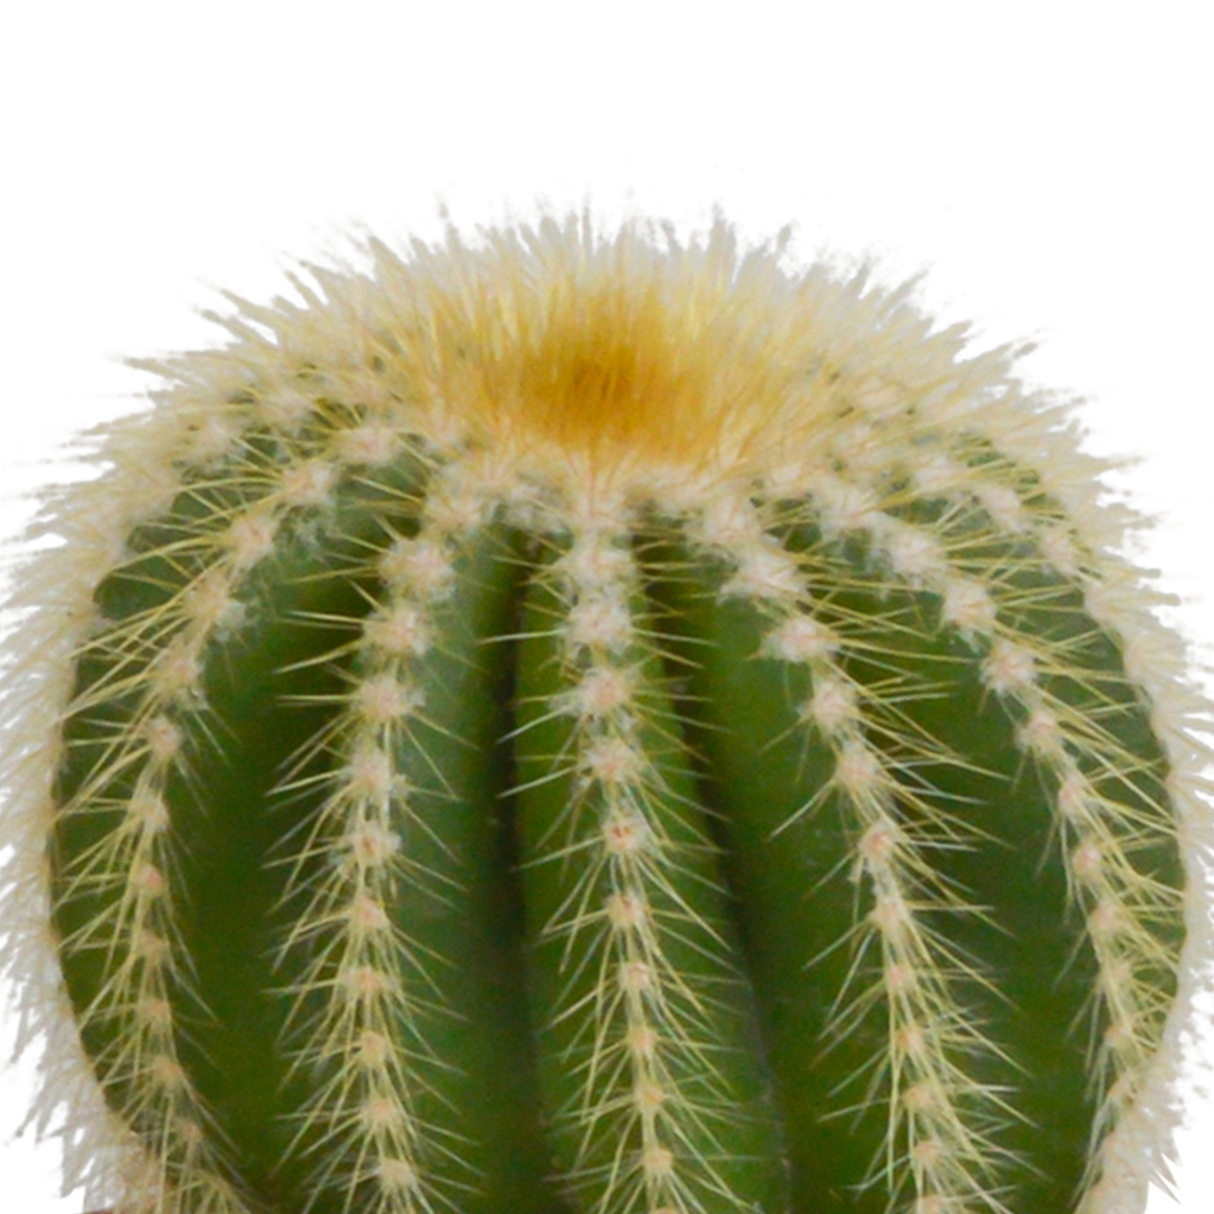 Scatola per cactus e fioriere bianche - Set di 3 piante, h18 cm